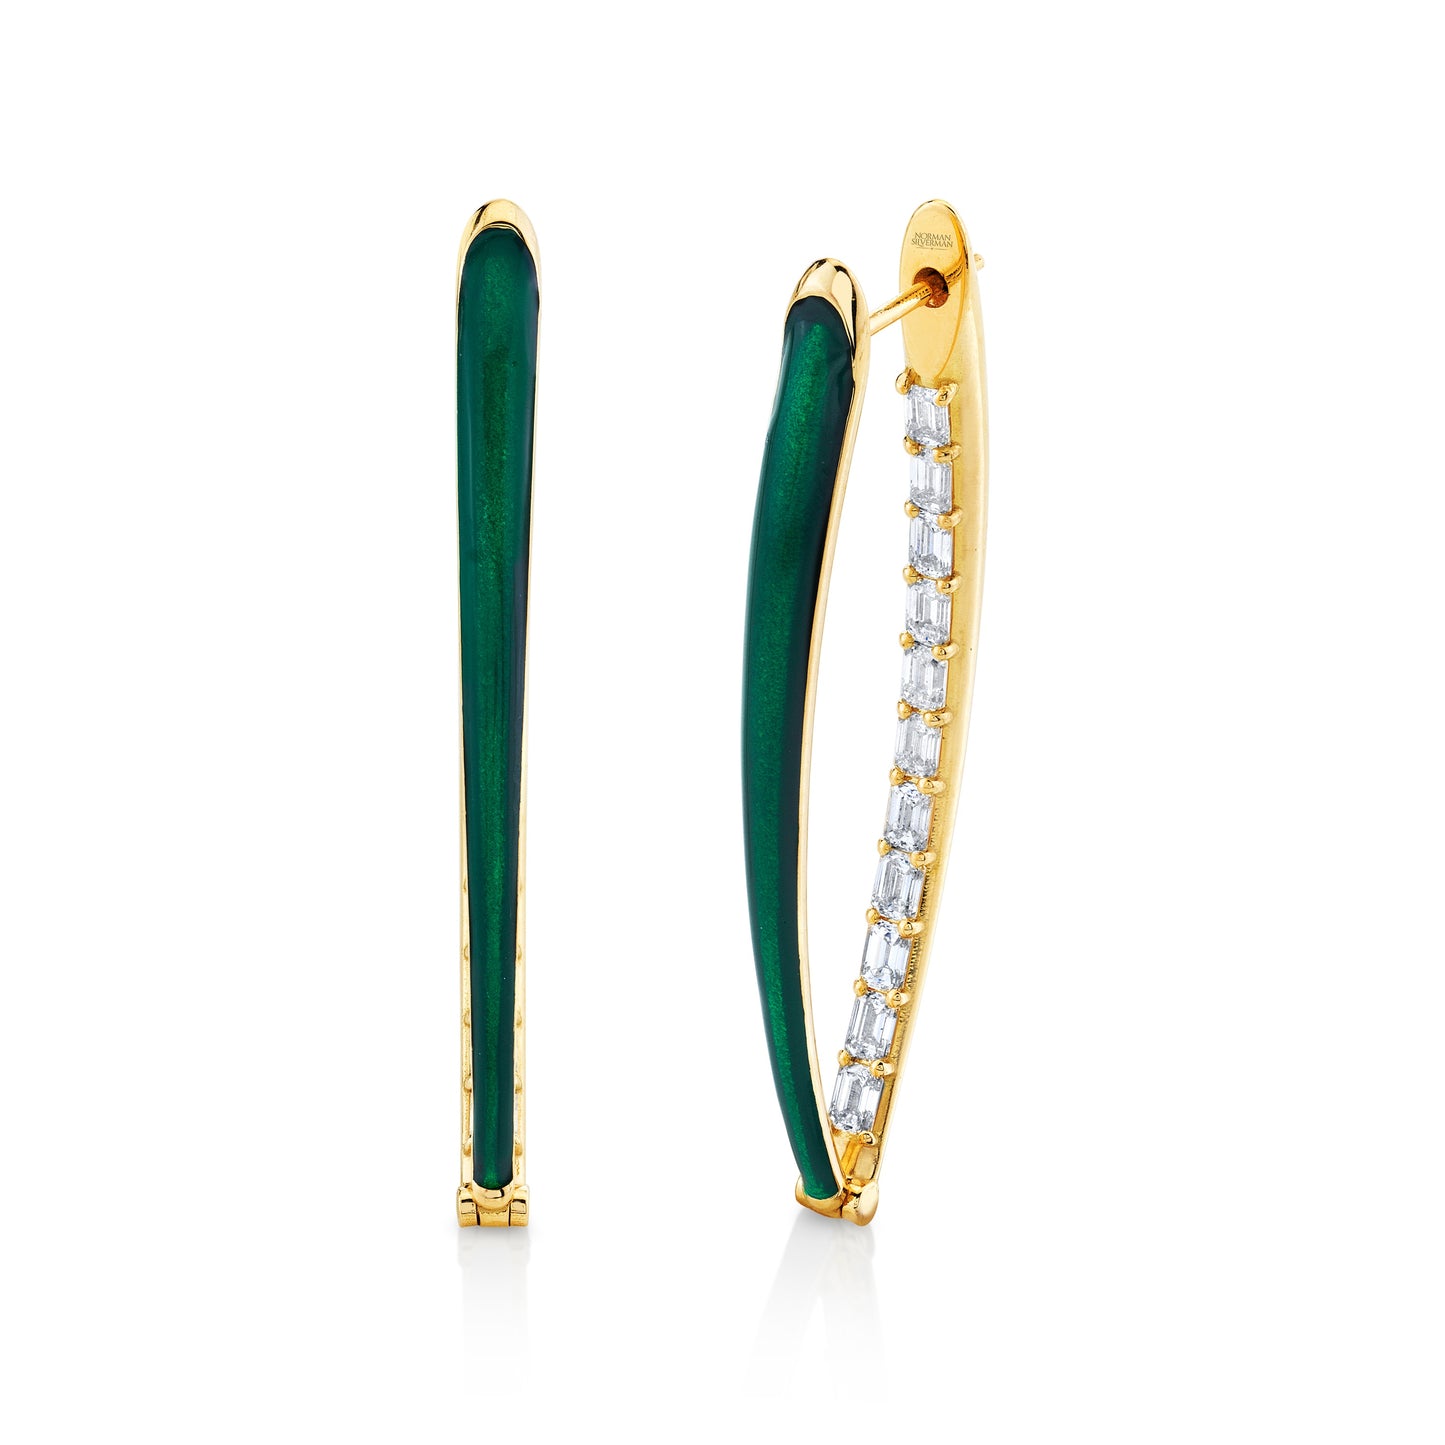 Emerald Cut Diamonds and Green Enamel Earrings